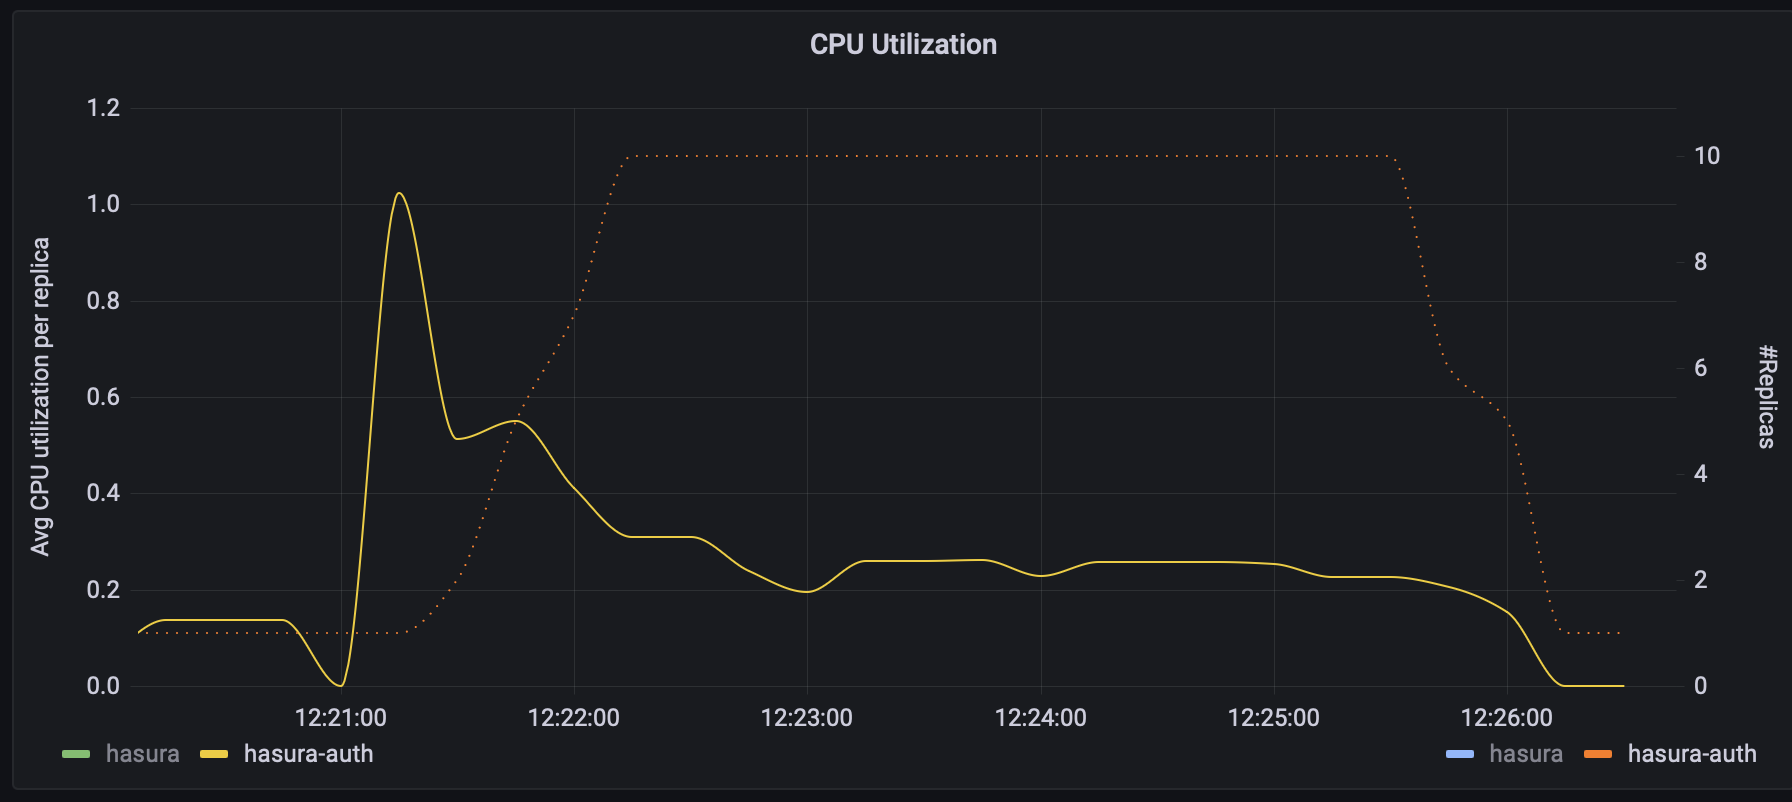 Average CPU Utilization per Replica vs # Replicas (auth)